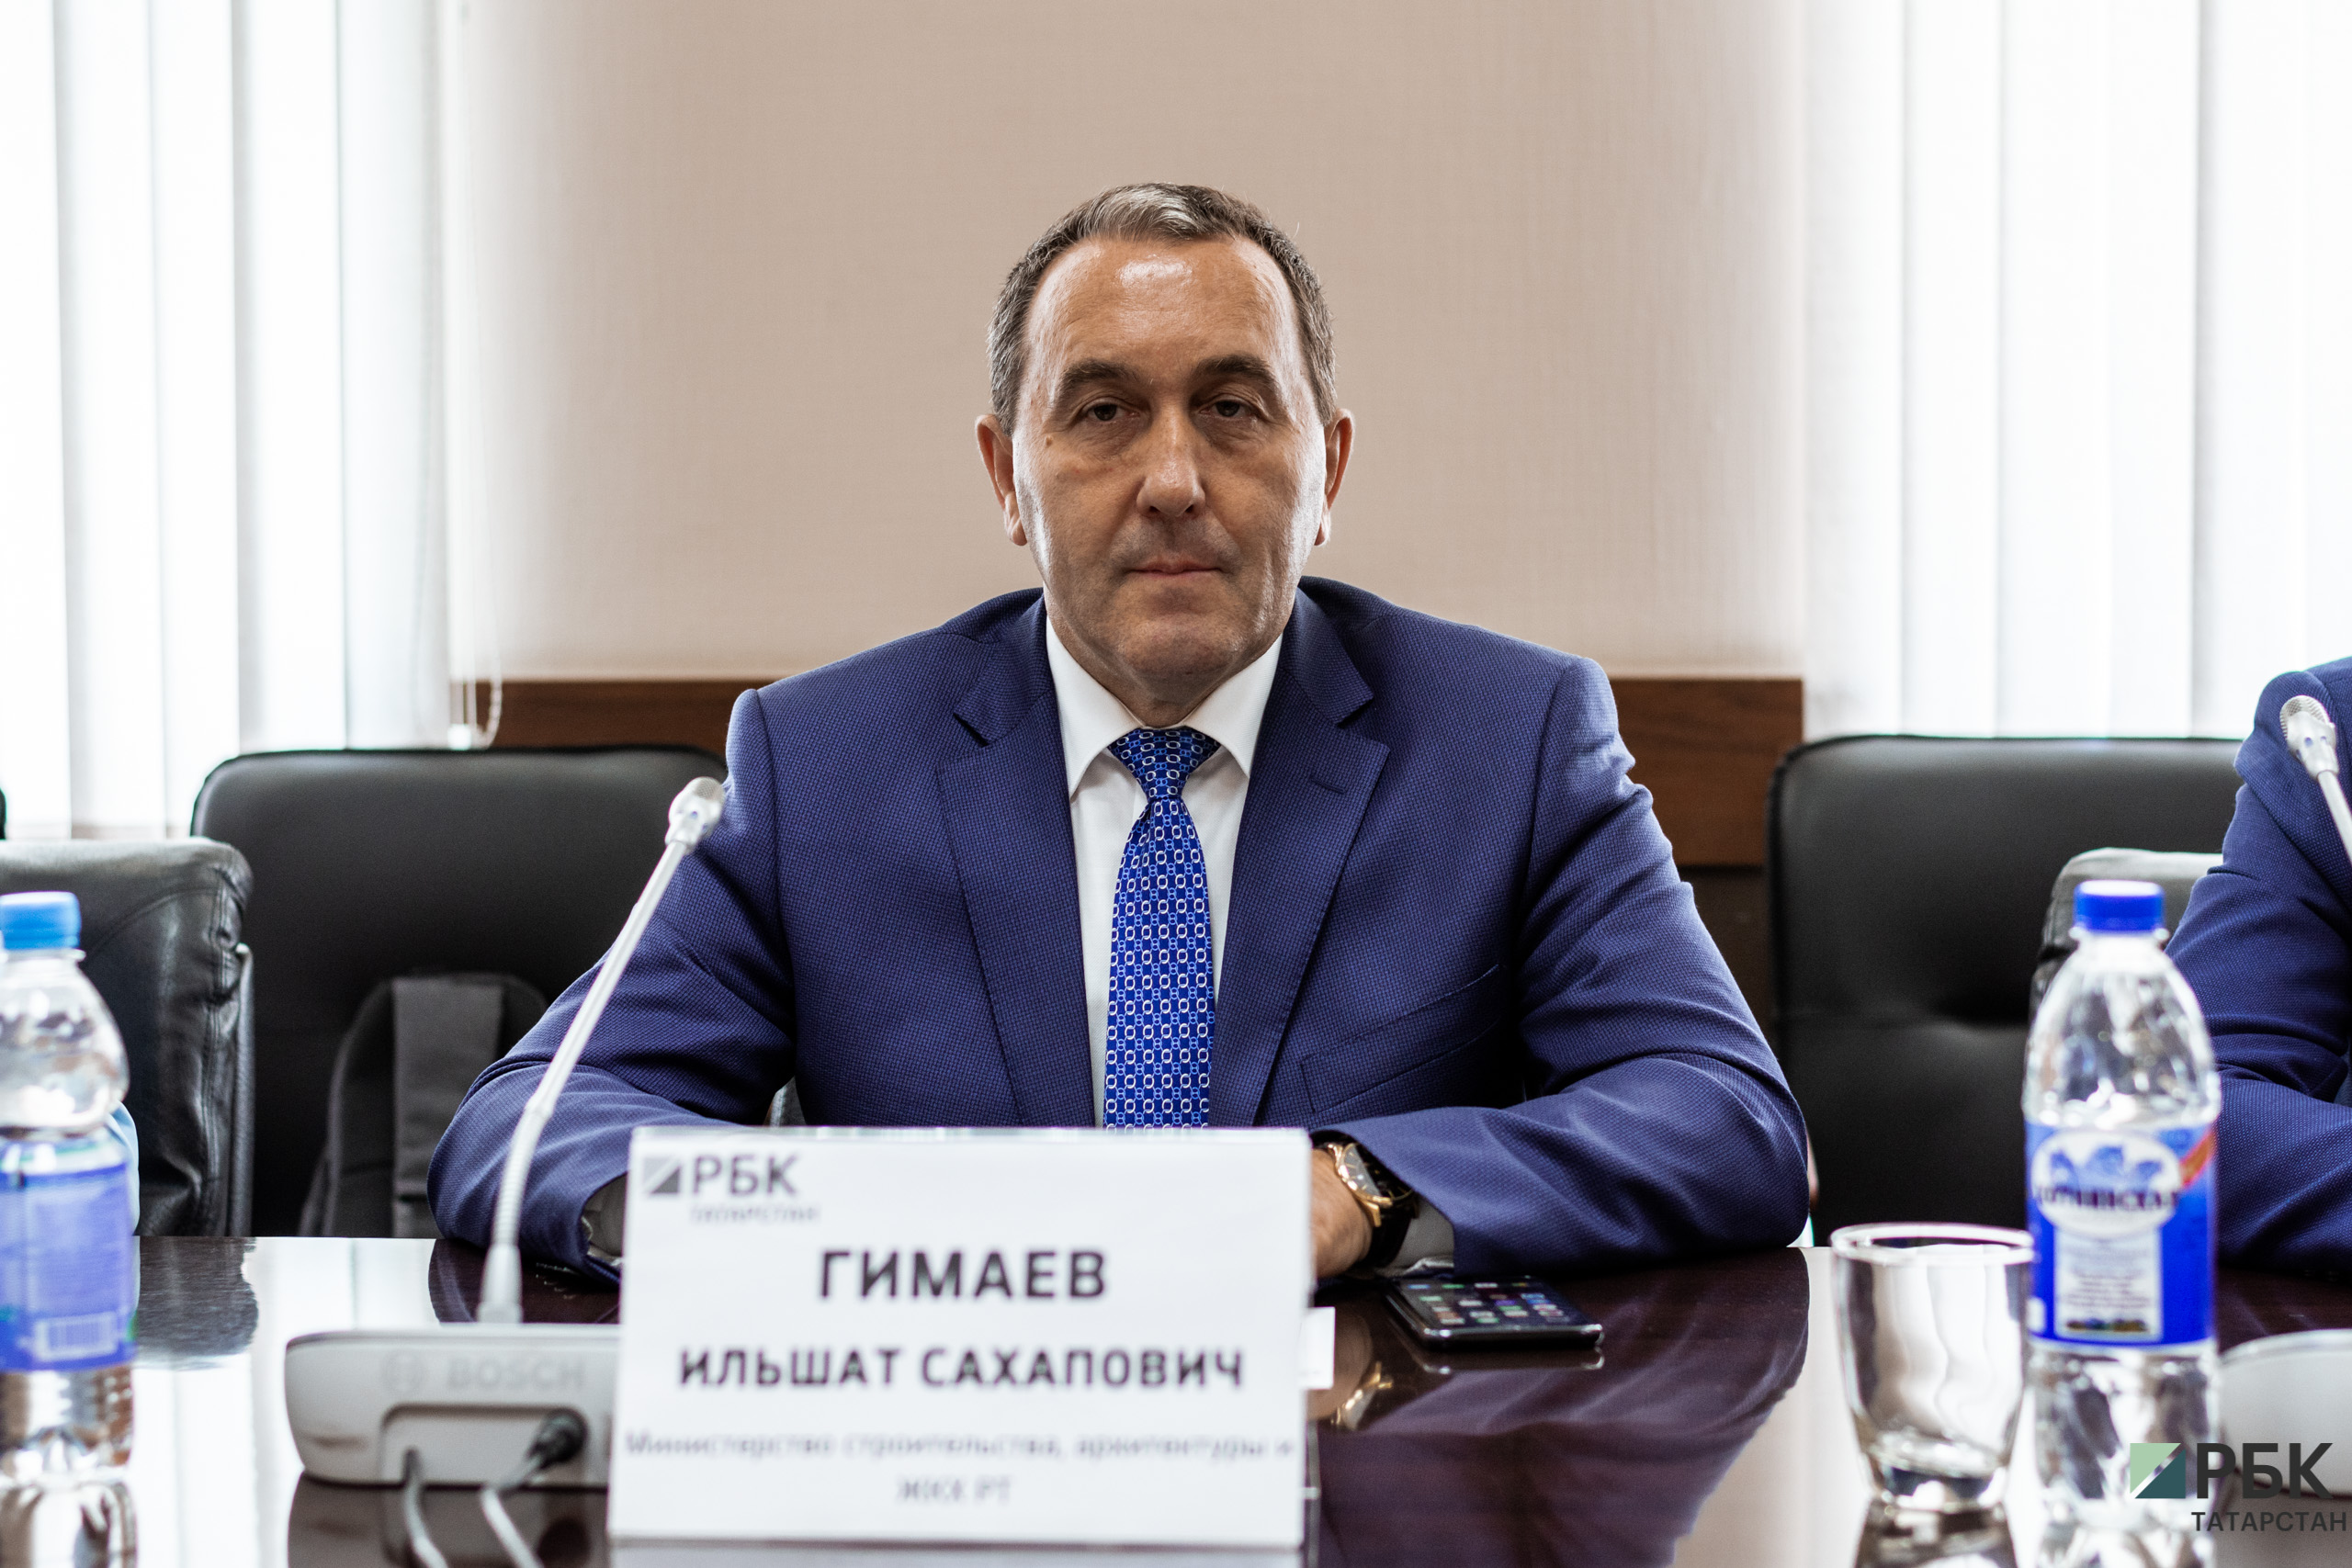 Татарстан к 2024 году должен увеличить ввод жилья на 1,2 млн кв. метров